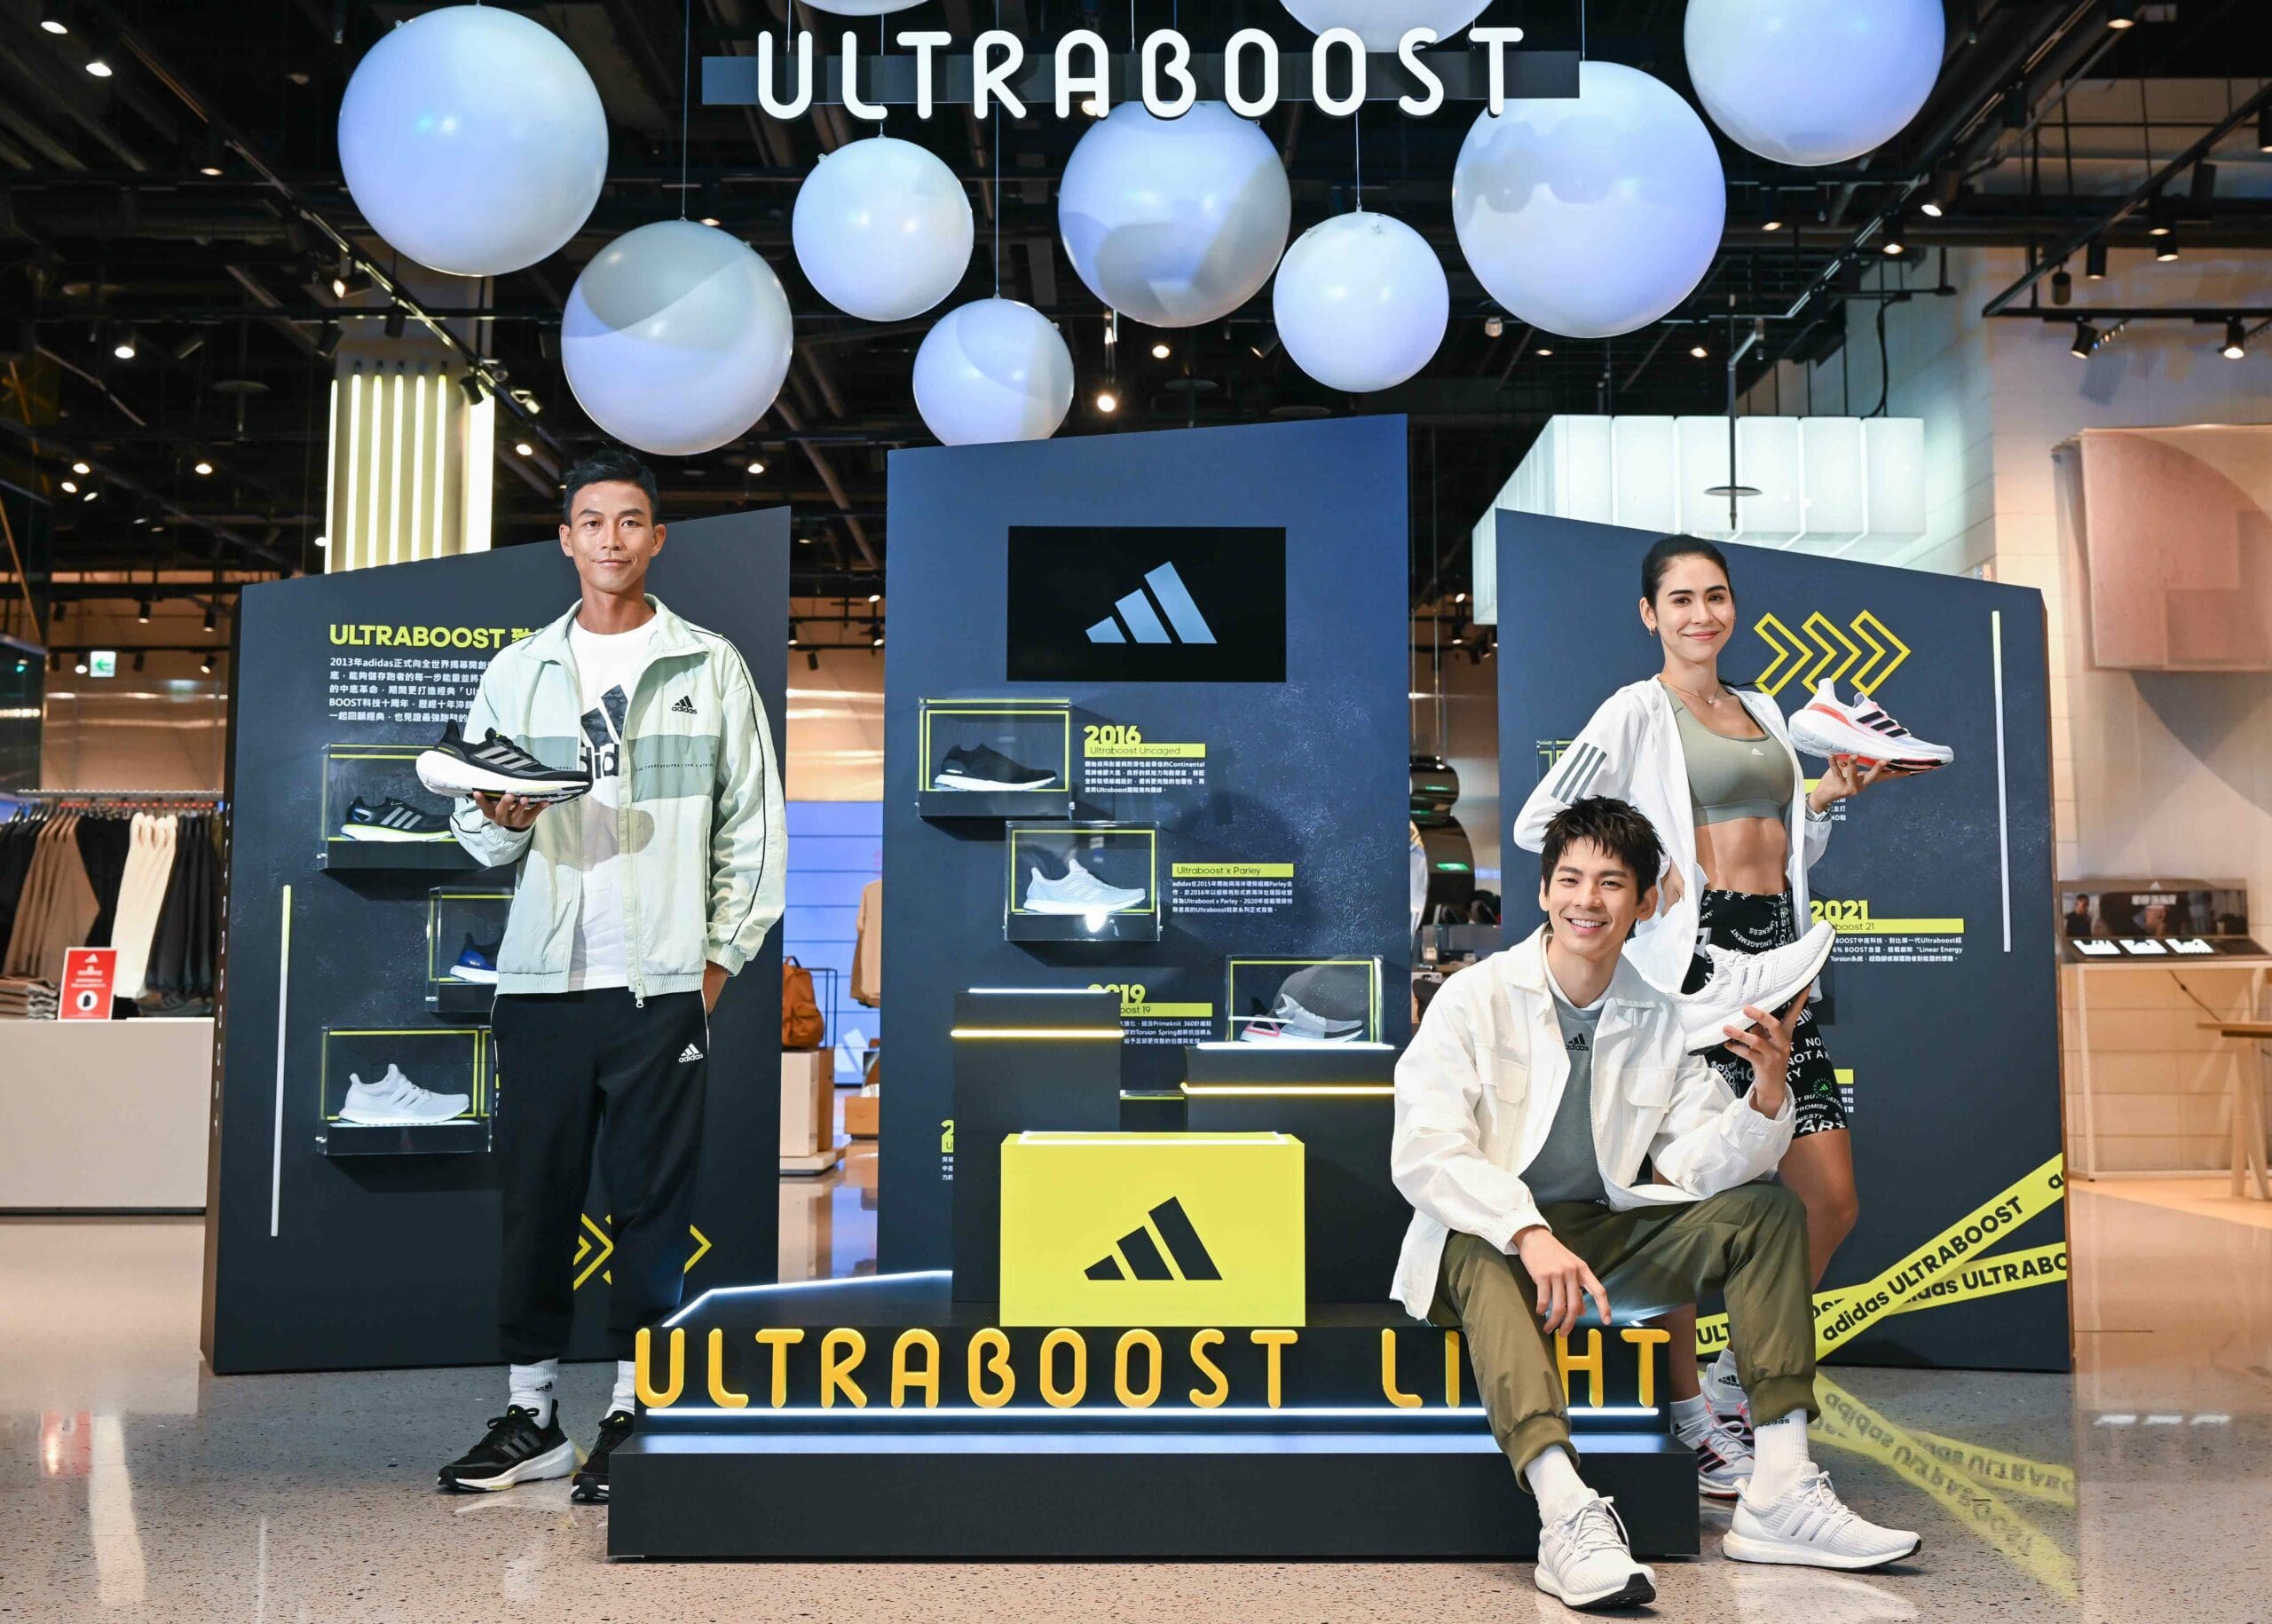 歡慶adidas BOOST科技10周年！《Ultraboost致敬經典 十周年特展》限定登場 盧彥勳、林柏宏、雷理莎驚喜現身 感受極致經典傳奇！